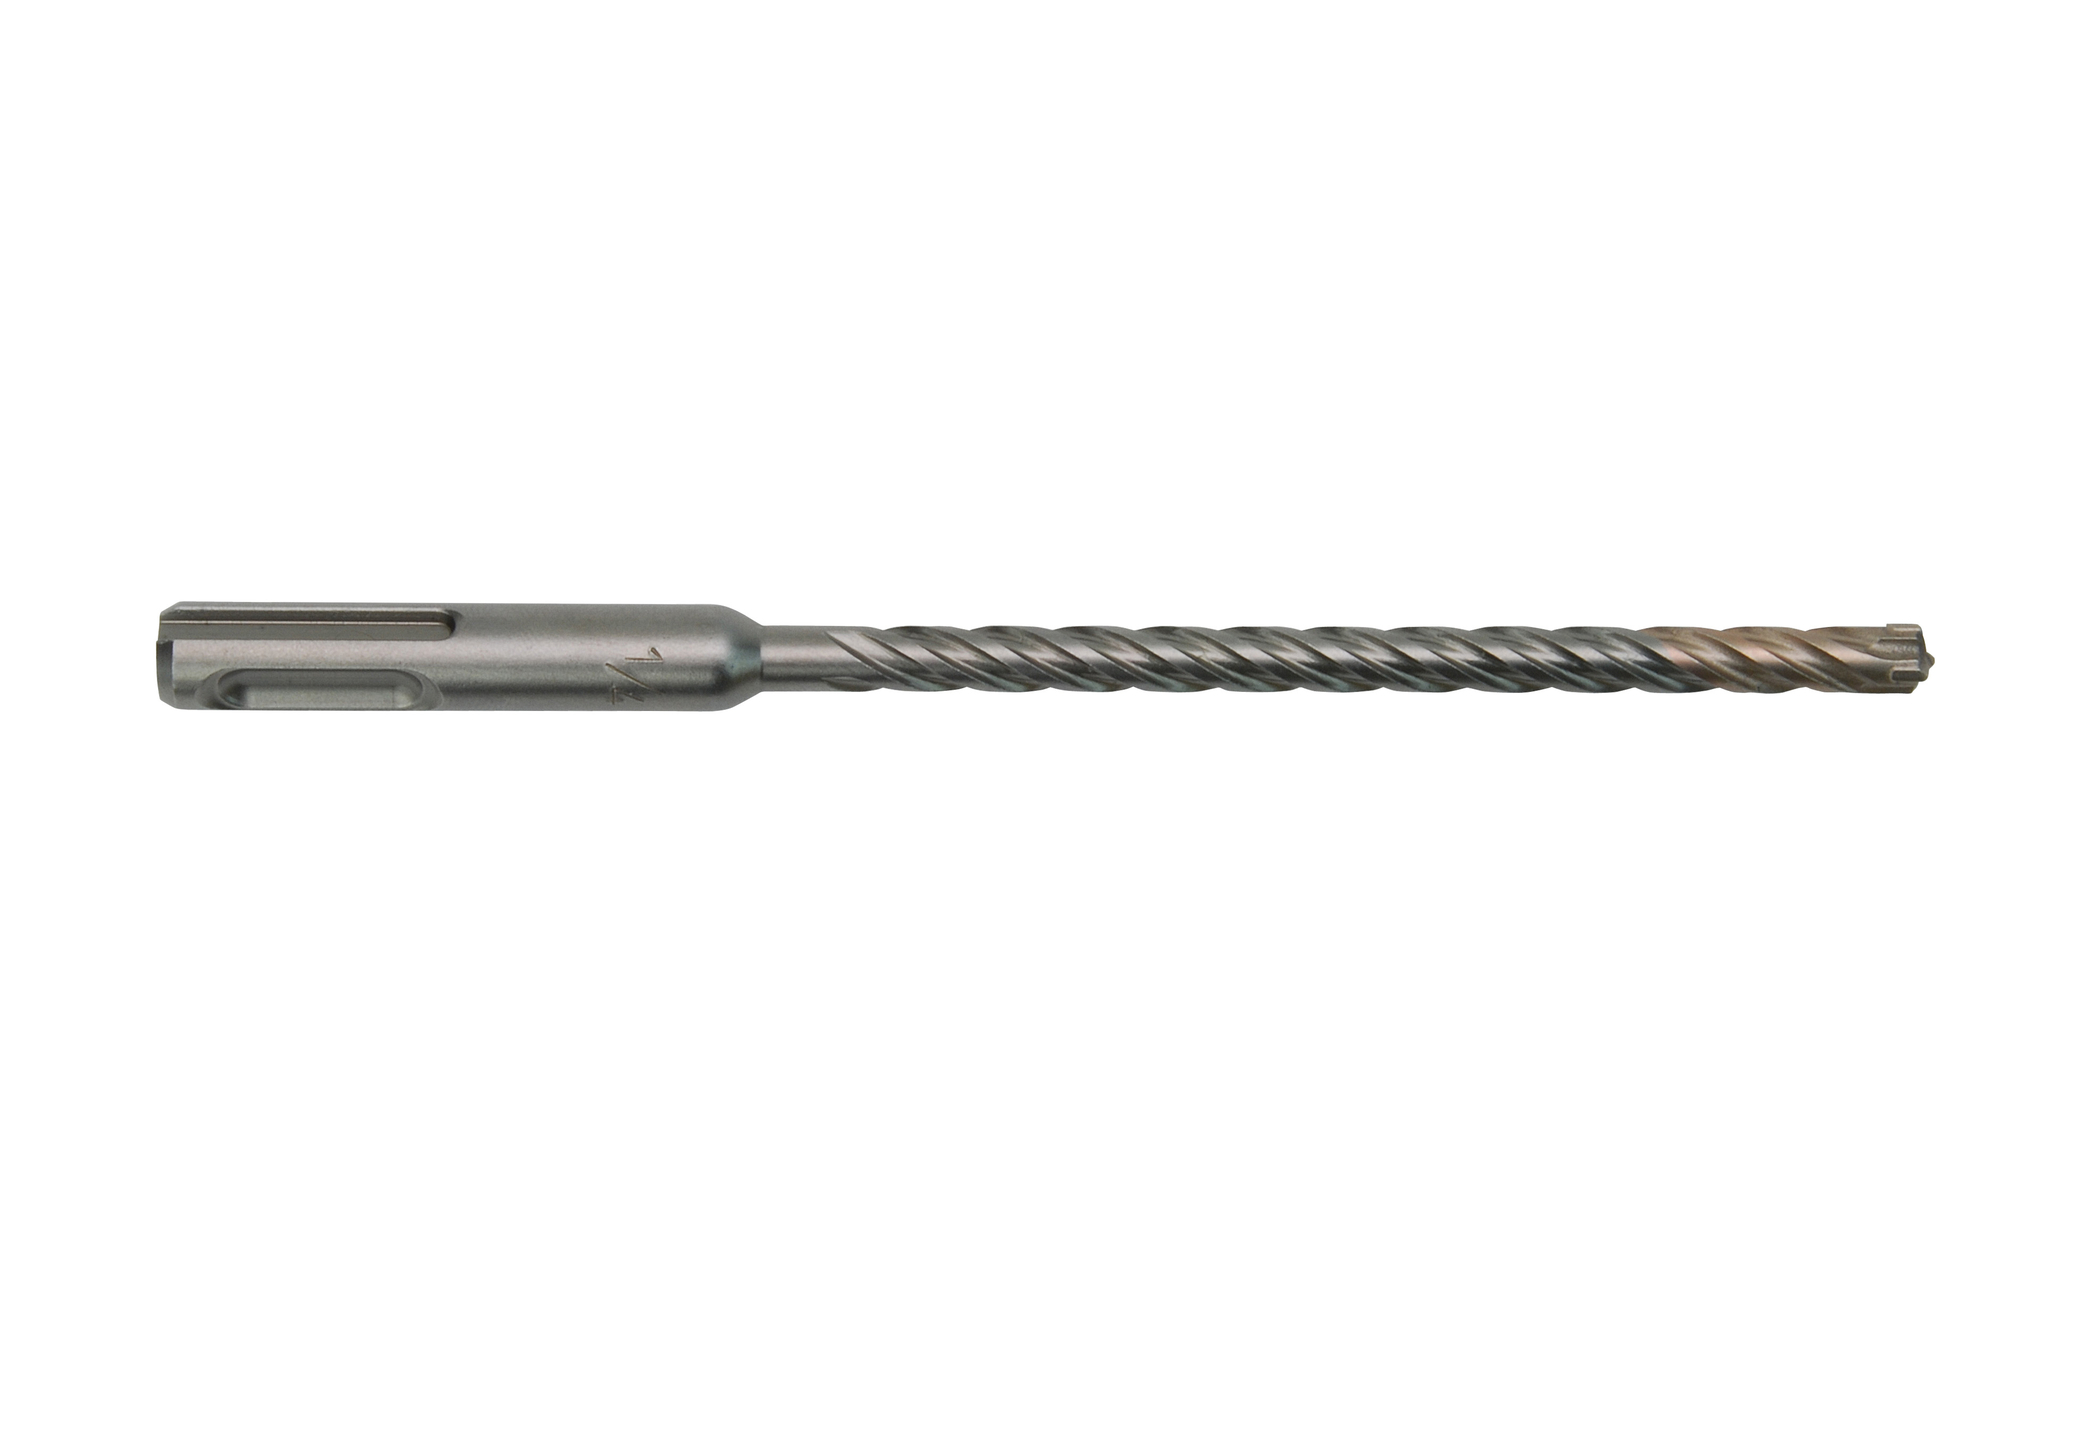 MX4 4-Cutter SDS-Plus Rotary Hammer-Drill Bit 3/8 in. x 4 in. x 6 in.